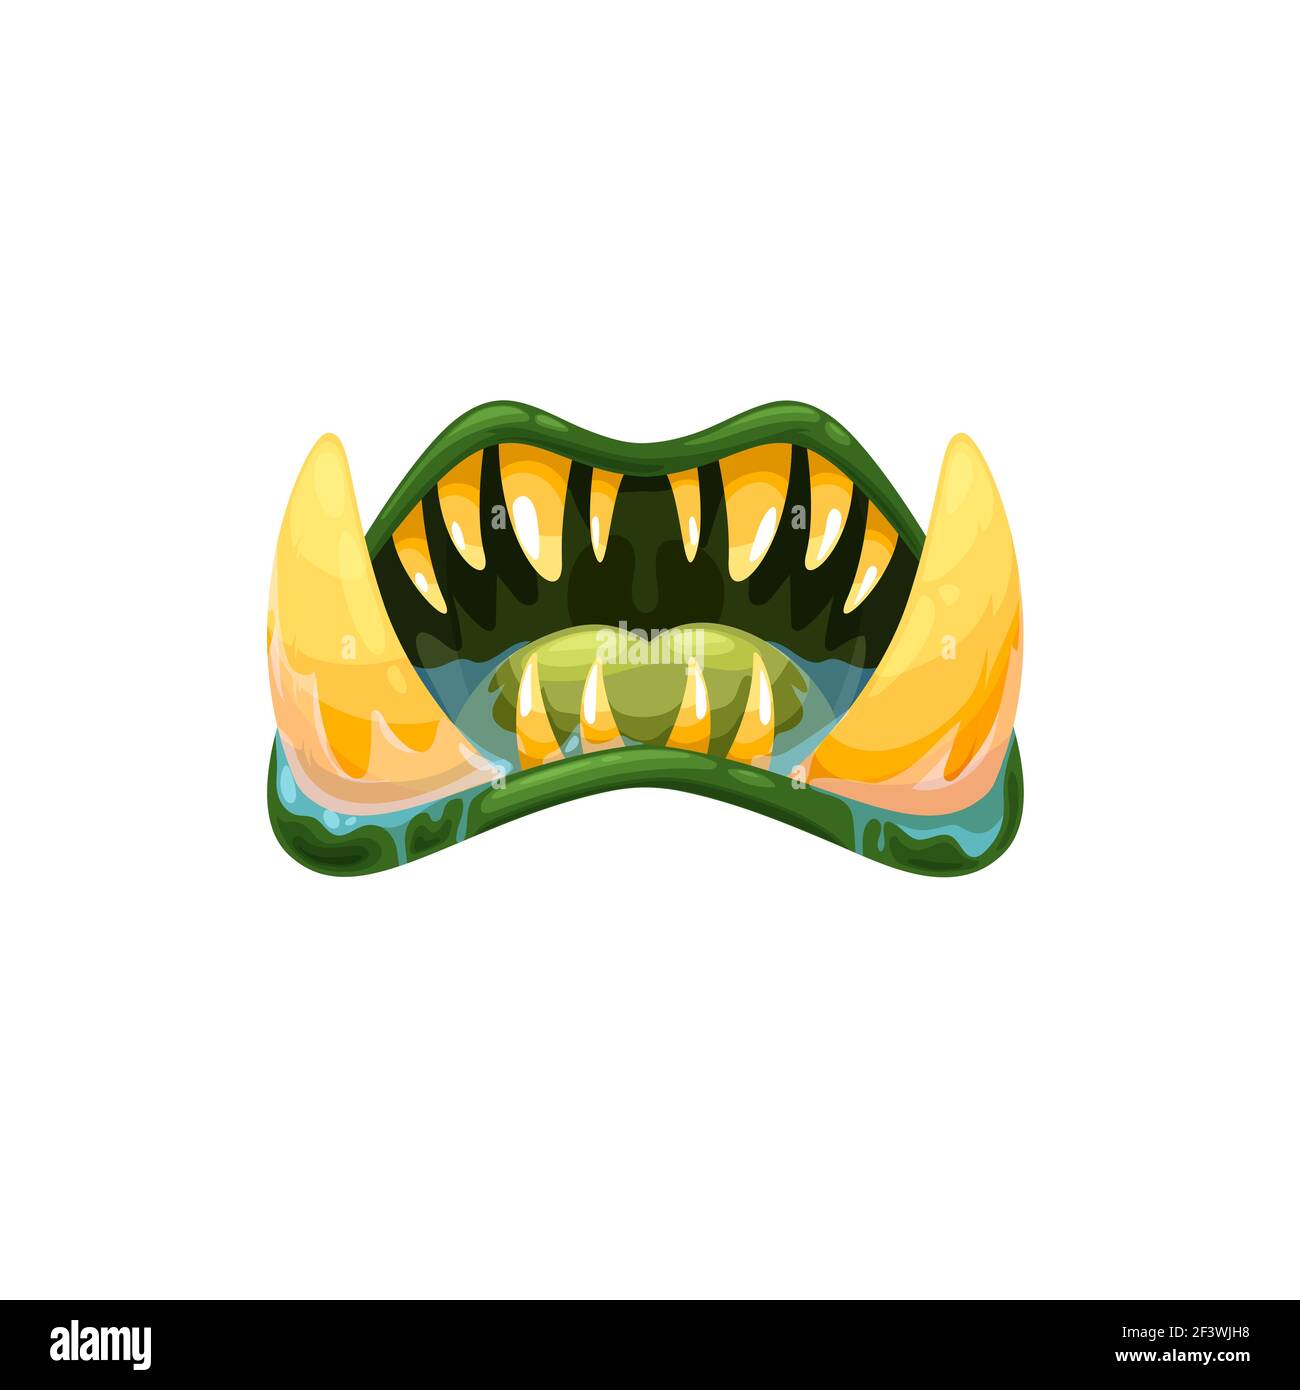 Monster Mund Vektor-Symbol, gruselige Oger oder Alien Kiefer mit scharfen Zähnen, riesige Reißzähne und grüne Zunge oder Lippen und spritzt Speichel. Halloween Kreatur, o Stock Vektor